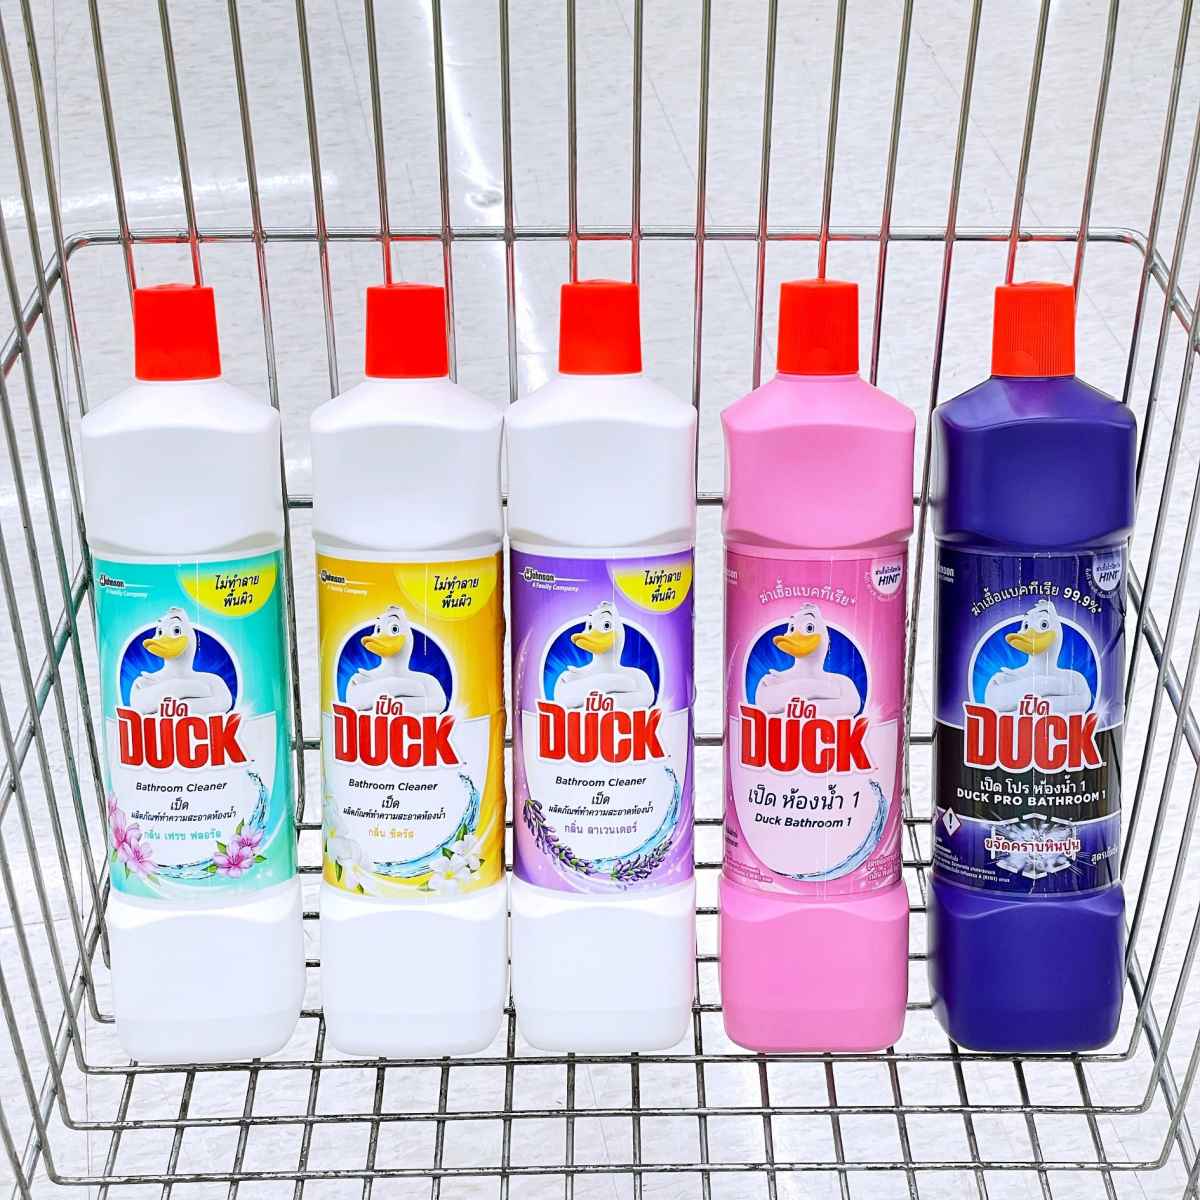 duck-bathroom-cleaner